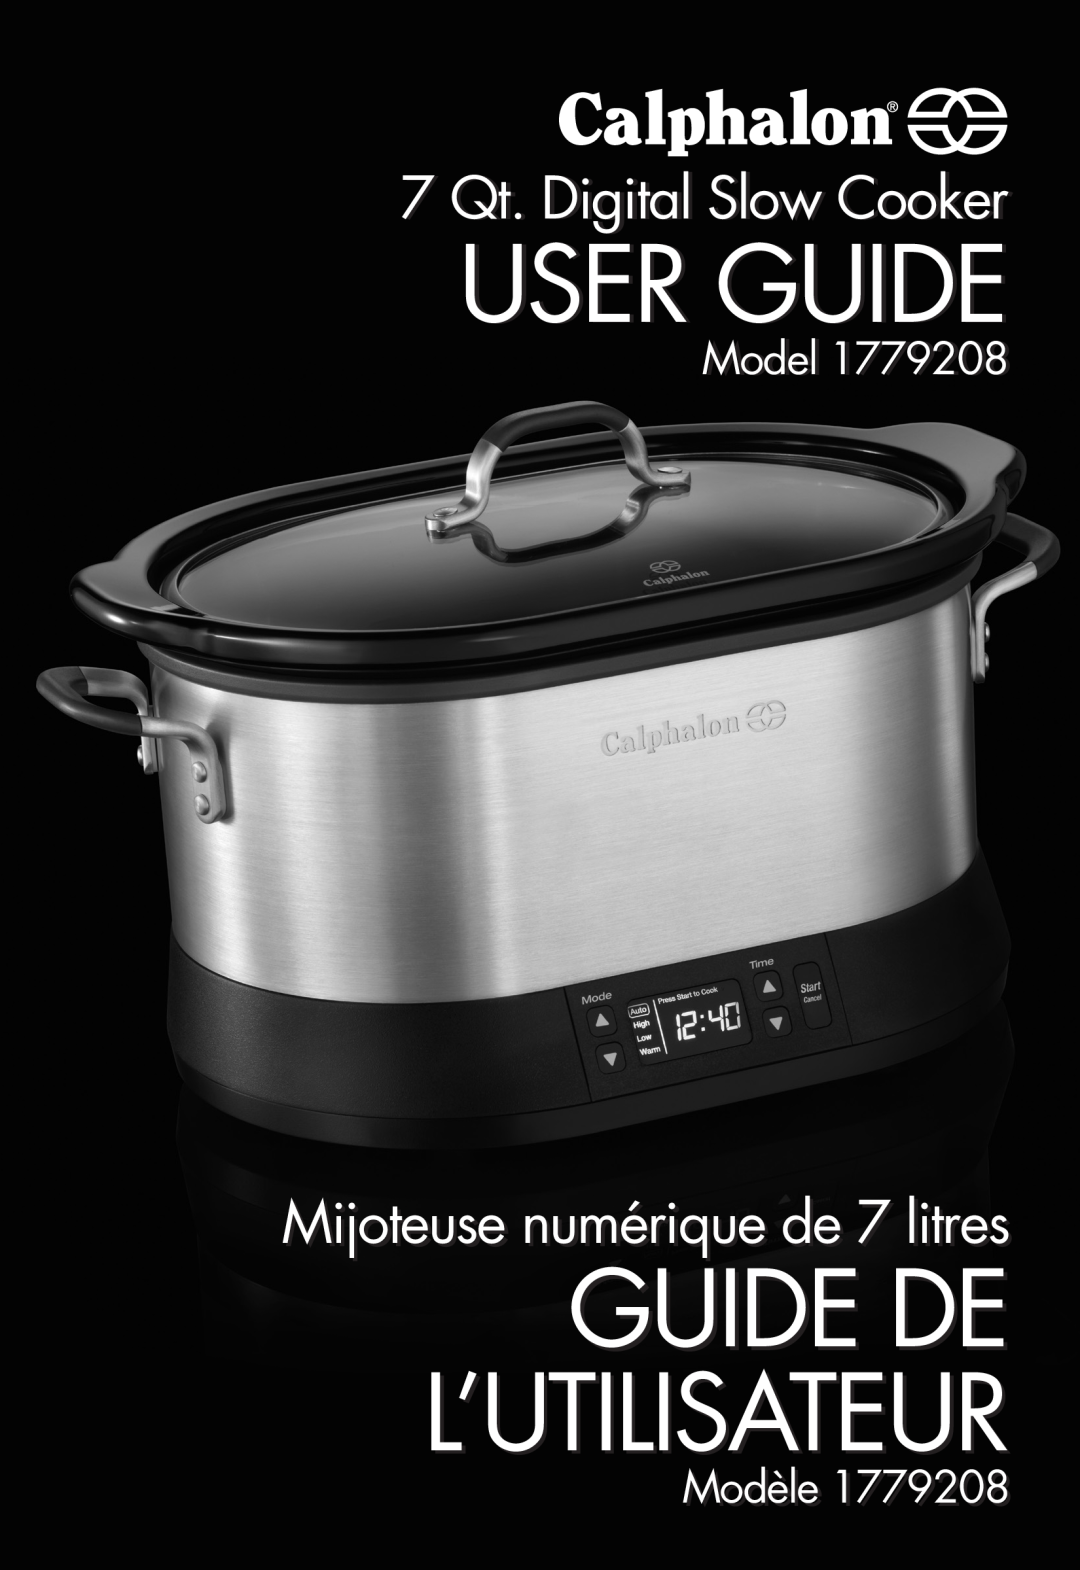 Calphalon 1779208 manual User Guide, Guide De L’Utilisateur, 7 Qt. Digital Slow Cooker, Mijoteuse numérique de 7 litres 